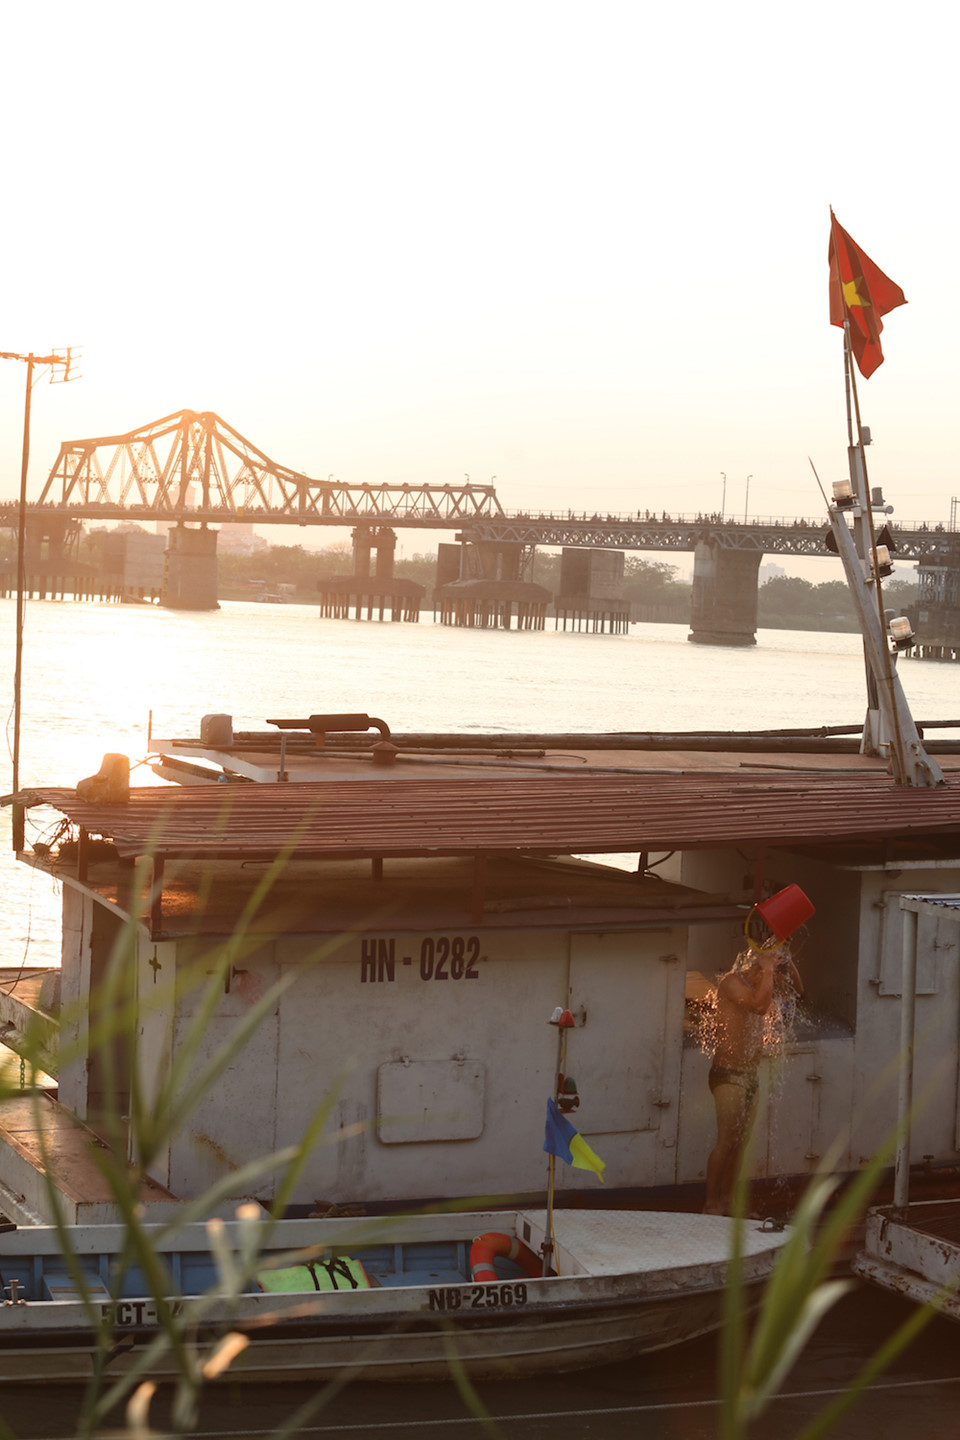 Một trong những chiếc thuyền của dân xóm chài sinh sống trên sông Hồng. Cầu Long Biên là cây cầu thép đầu tiên bắc qua sông Hồng tại Hà Nội, do Pháp xây dựng từ năm 1899 đến năm 1902, đến nay đã được hơn 100 năm tuổi.